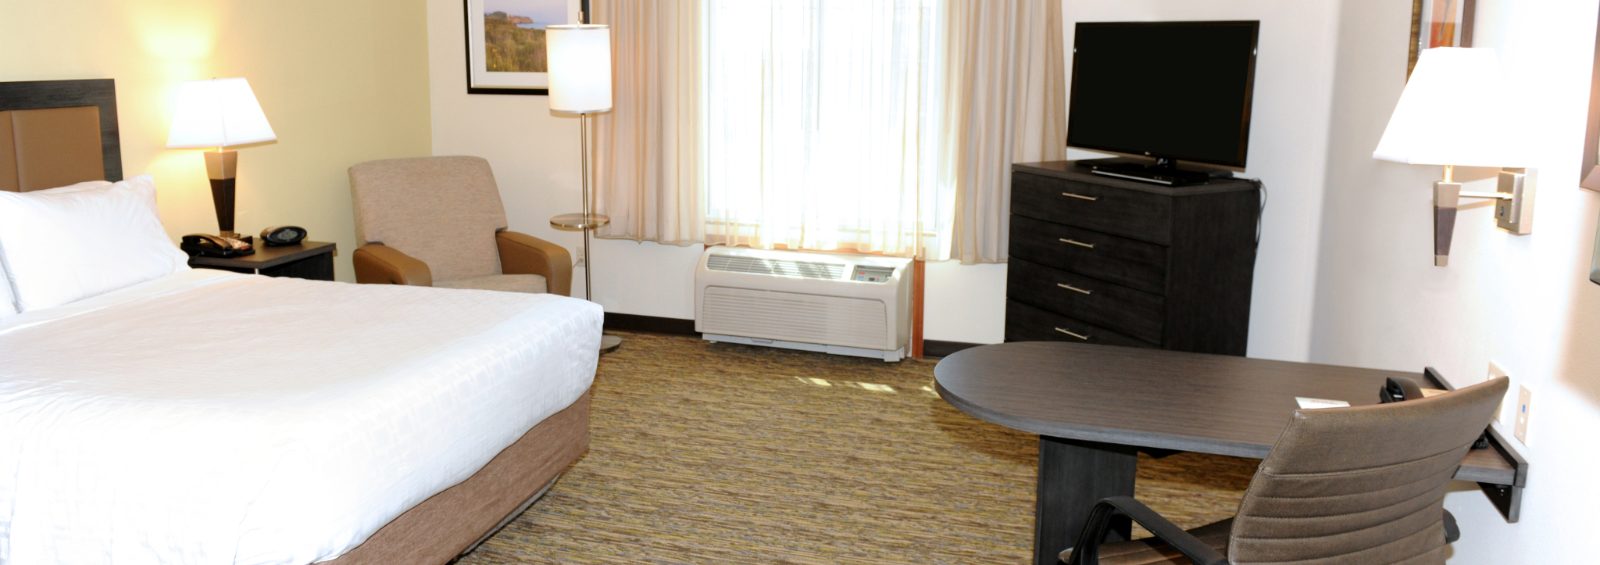 Candlewood Suites Santa Maria California hotel room